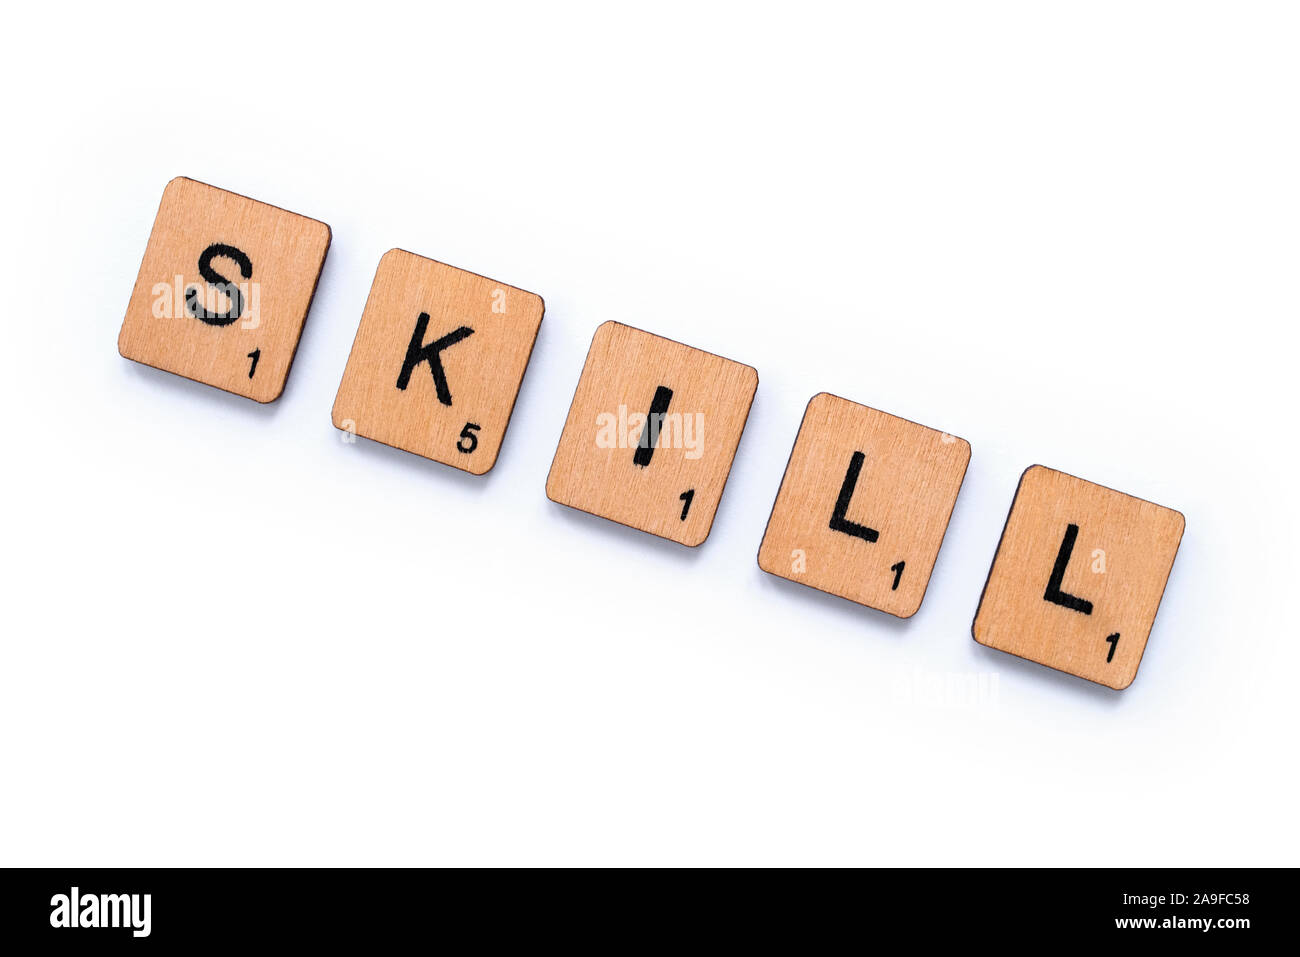 London, UK, 12. Juni 2019: Das Wort "Skill", Dinkel mit hölzernen Buchstabensteine über einem weißen Hintergrund. Stockfoto